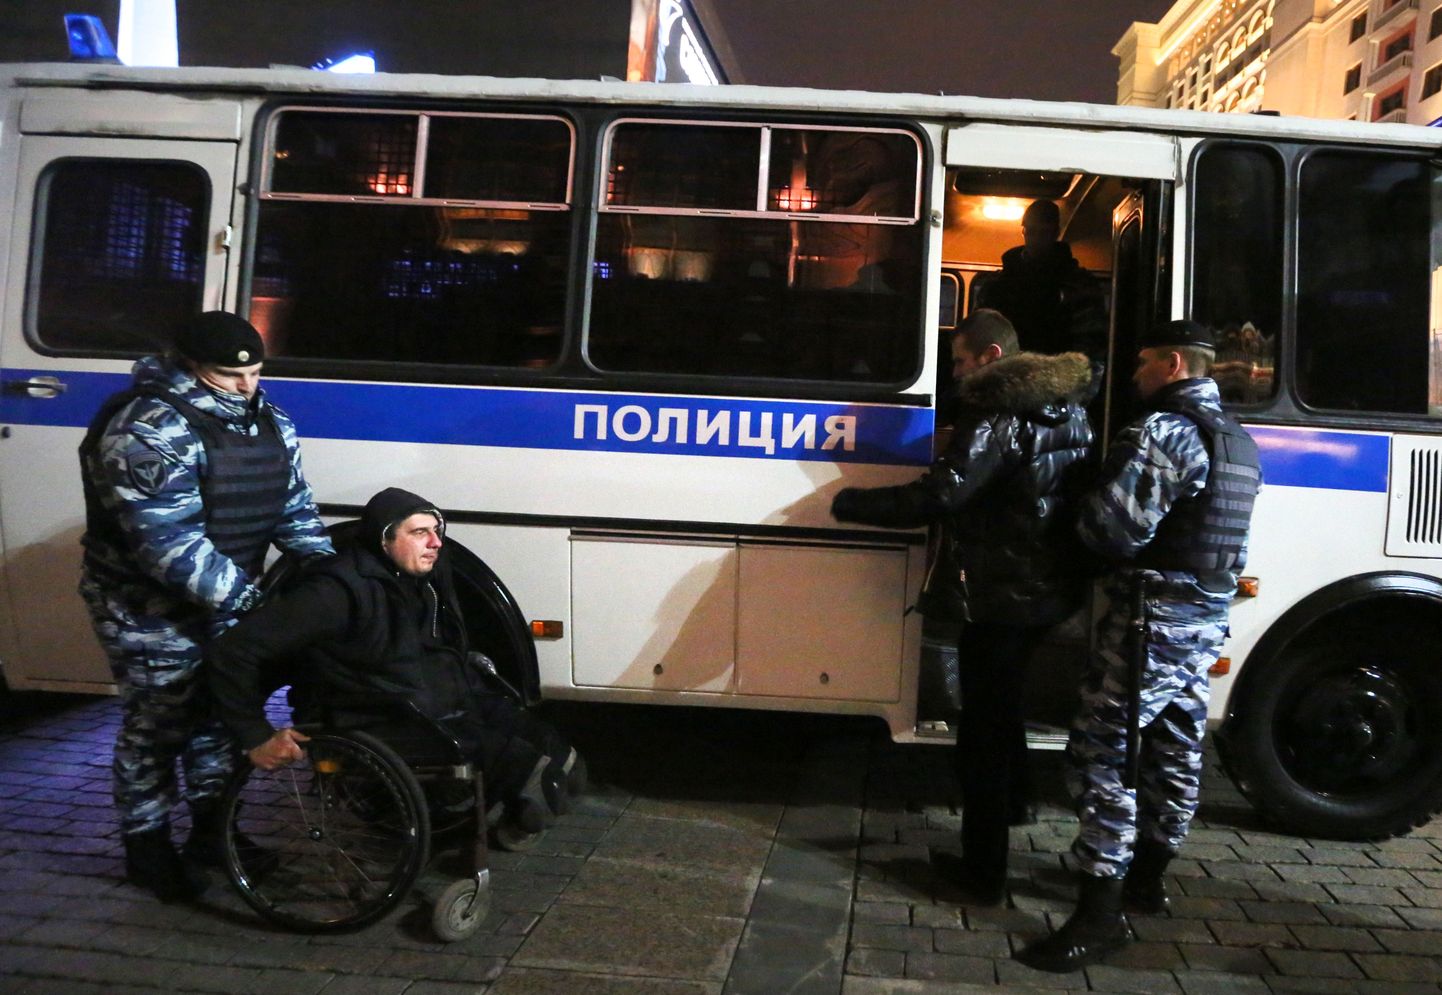 Sel esmaspäeval toimus Moksvas Maneeži väljakul Bolotnaja juhtumi kohtualuste toetuseks meeleavaldus. Pildil kinnipeetud protestijad, keda toimetatakse politseibussi.